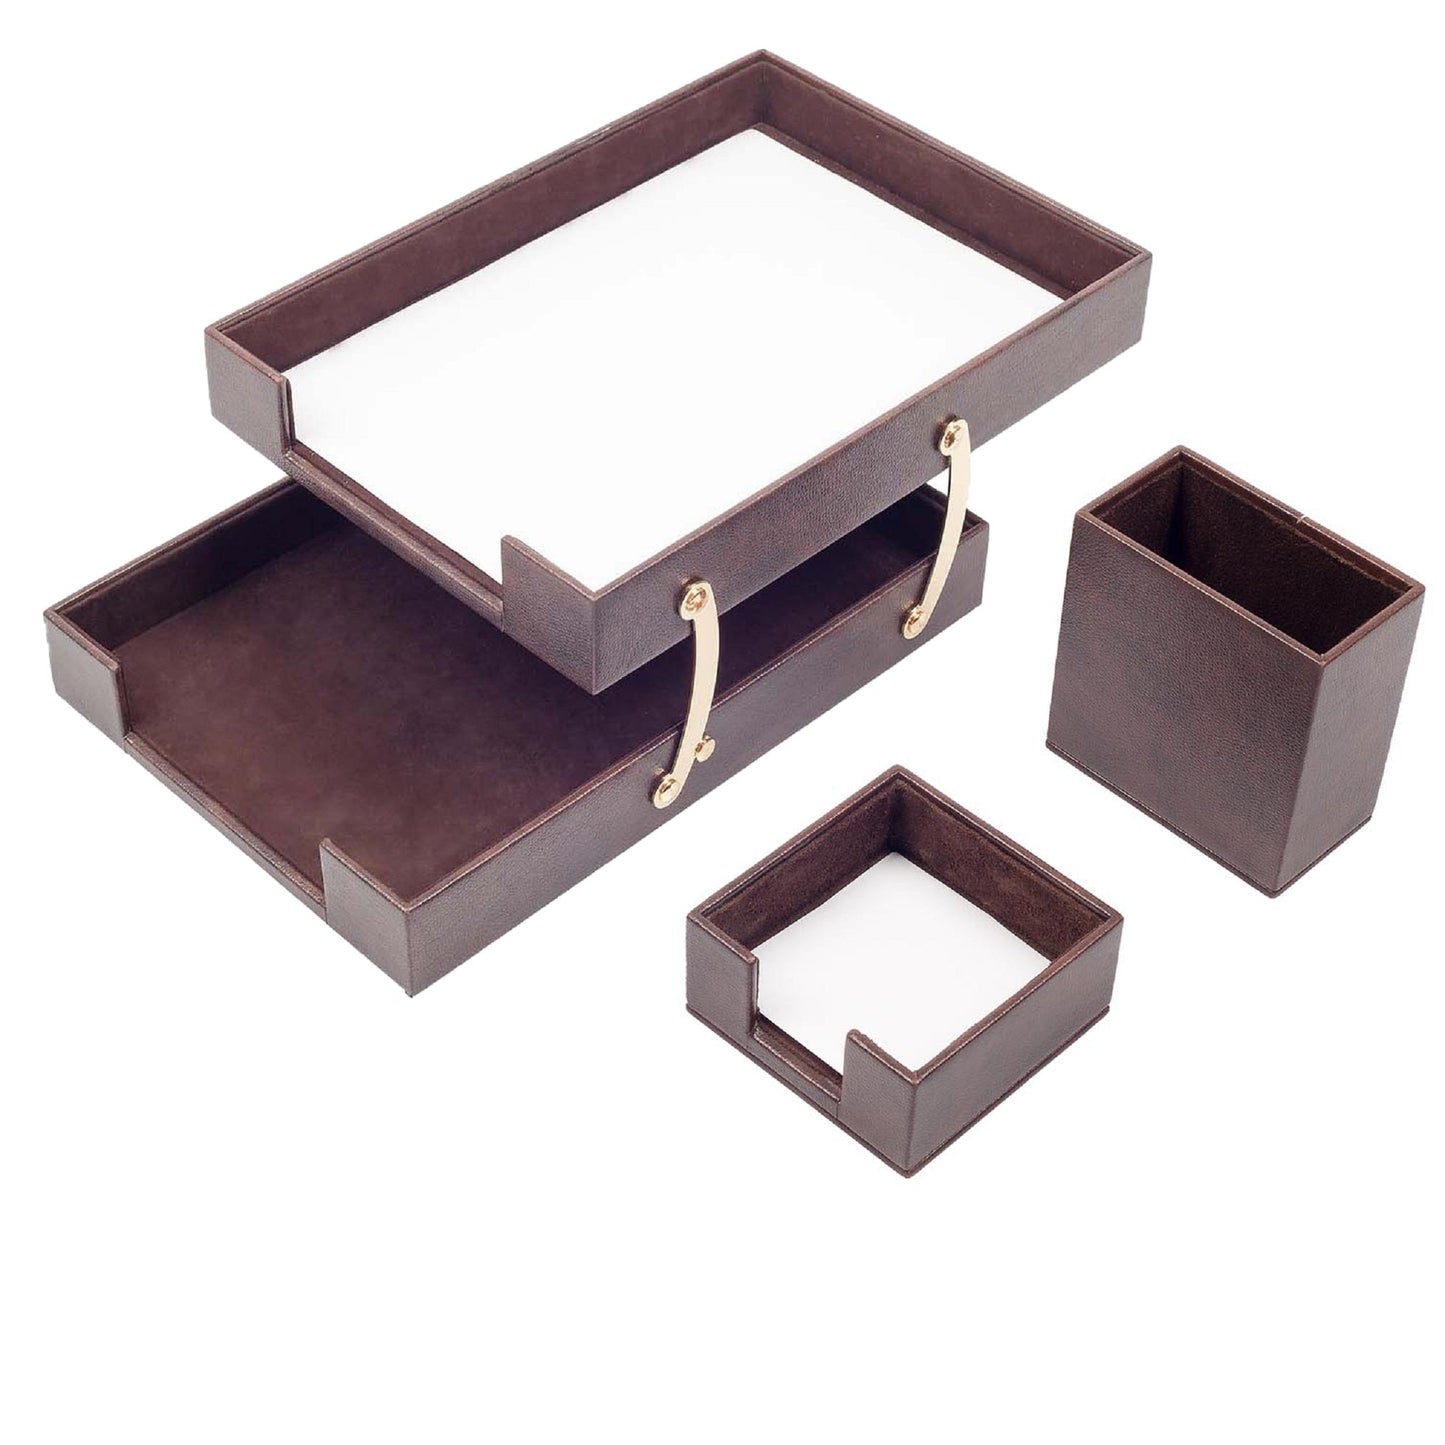 MOOG  Leather Desk Set-3 Accessories-Desk Organizer-Office Desk Accessories-Office Organizer-Desk Pad-Desktop Storage - Leather Desk Pad - Double Document Tray 3 PCS